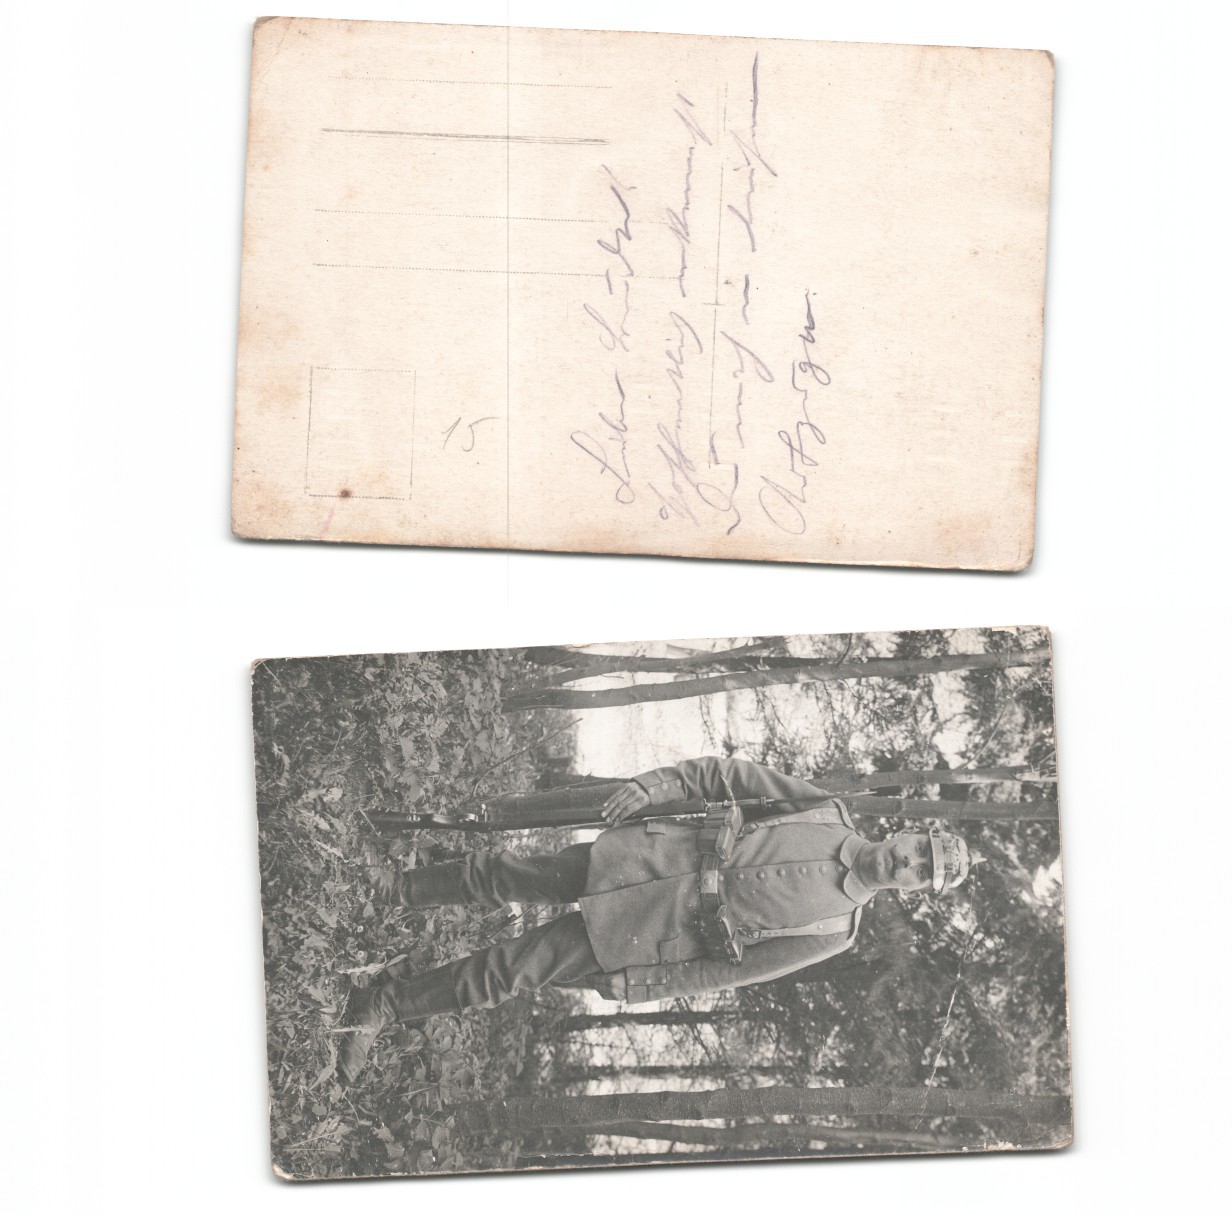 (a6265115)   Fotoansichtskarte Osten Bug Düna etc, 1. Weltkrieg, - Bild 1 von 1